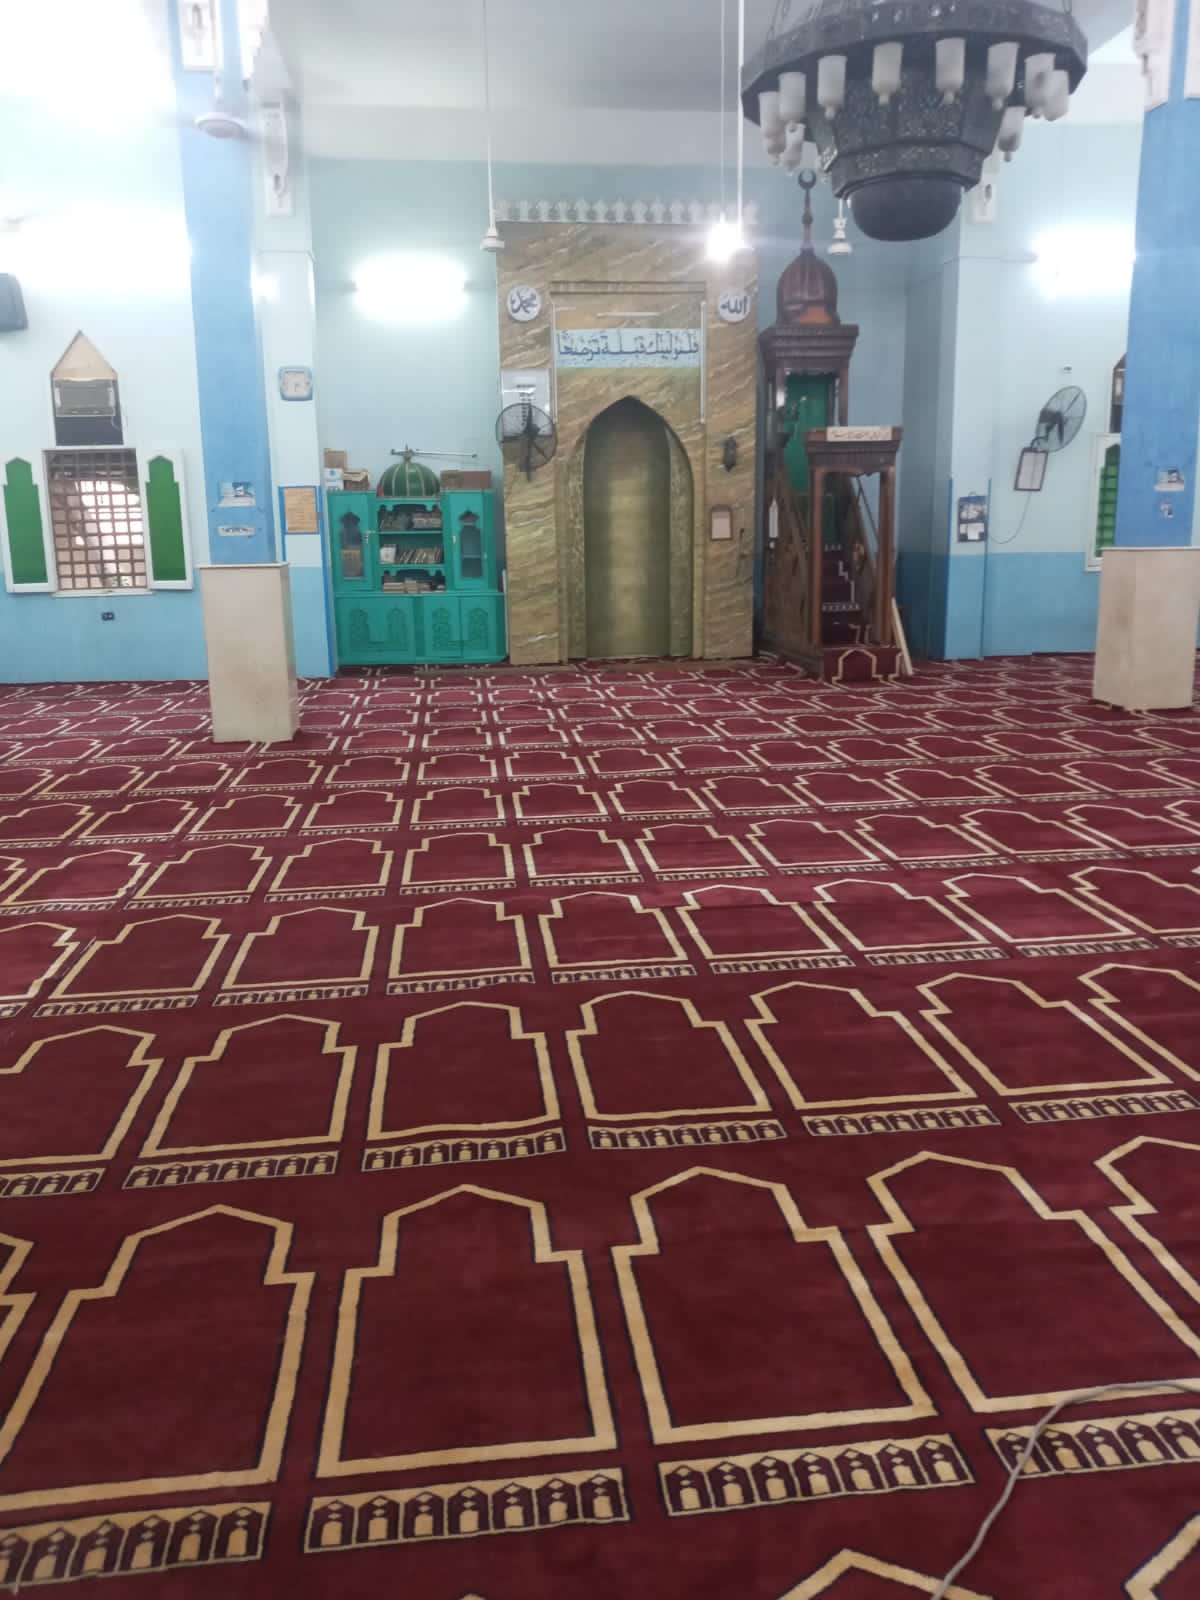 فرش مسجد الطاهر الحامدى بالكرنك بمدينة الأقصر